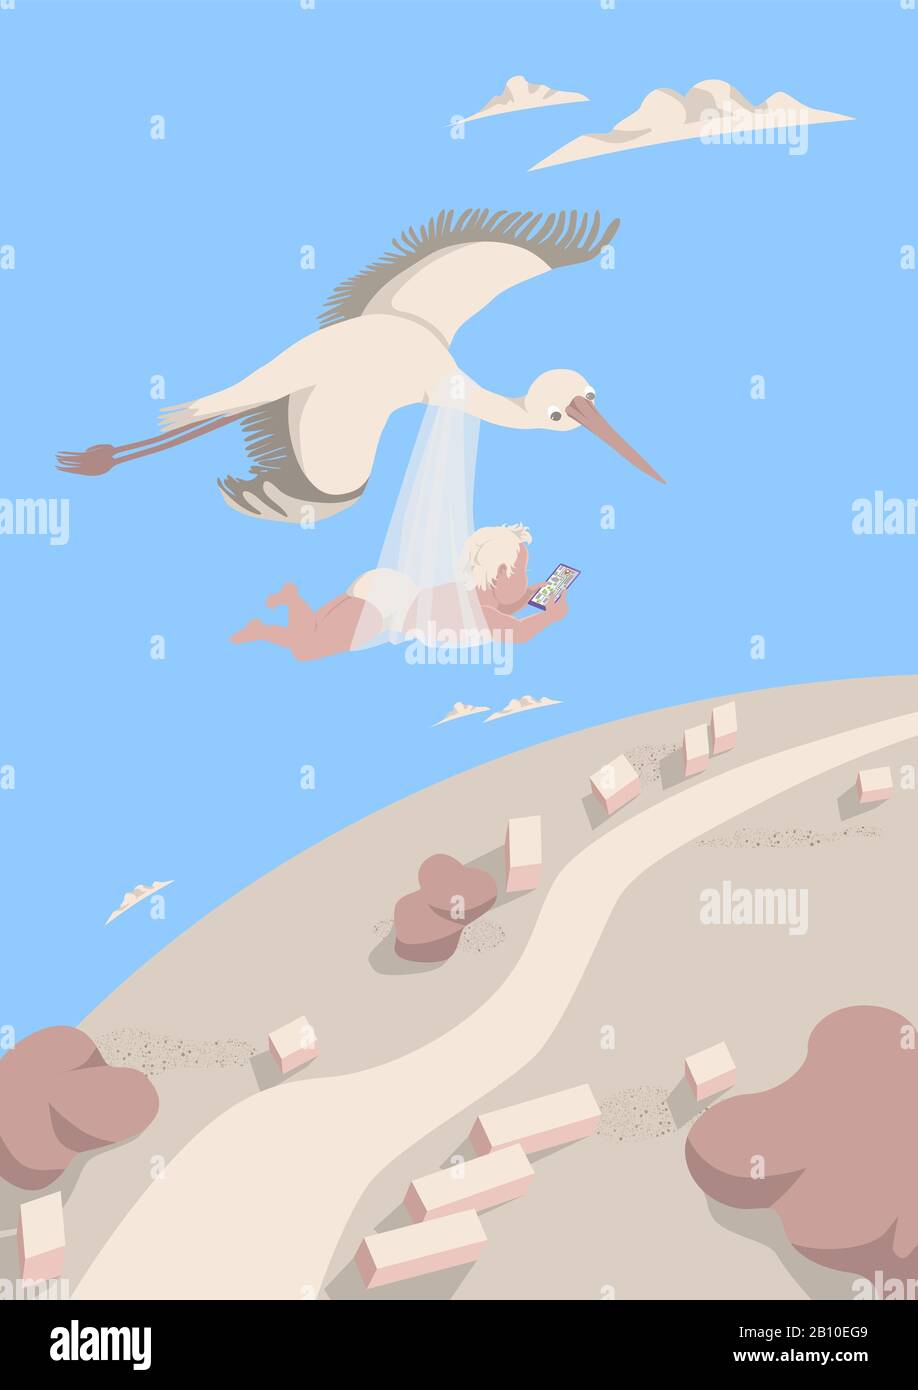 Le stork transporte un bébé en regardant le chemin sur le navigateur dans le smartphone. Un oiseau vole haut dans le ciel parmi les nuages. Concept de carte postale postc Illustration de Vecteur